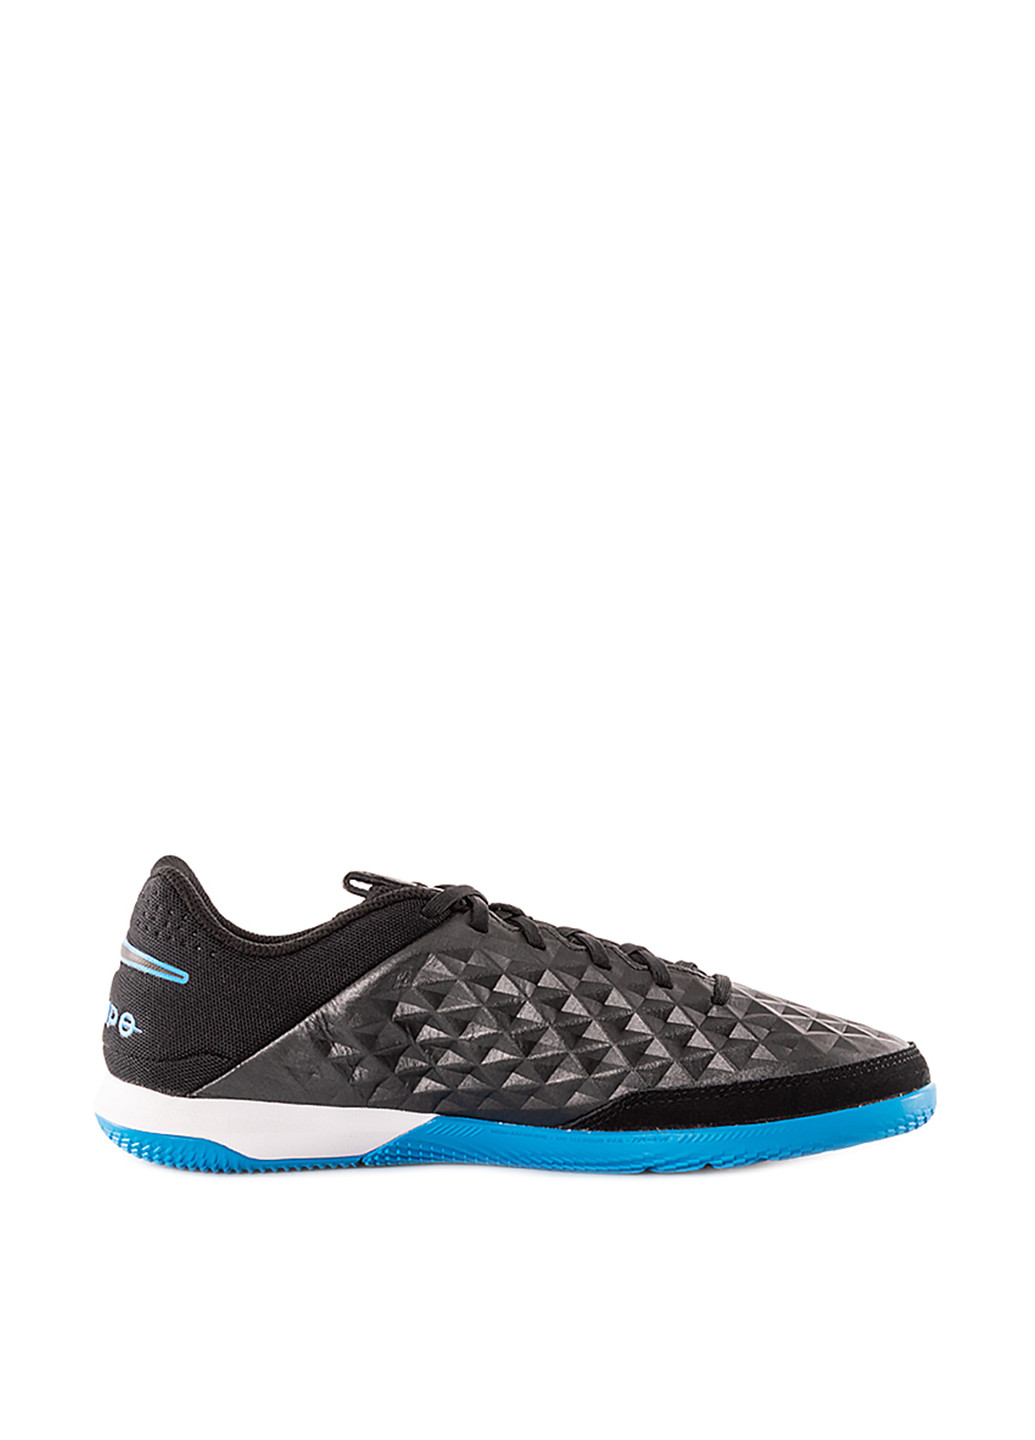 Черные всесезонные кроссовки Nike LEGEND 8 ACADEMY IC